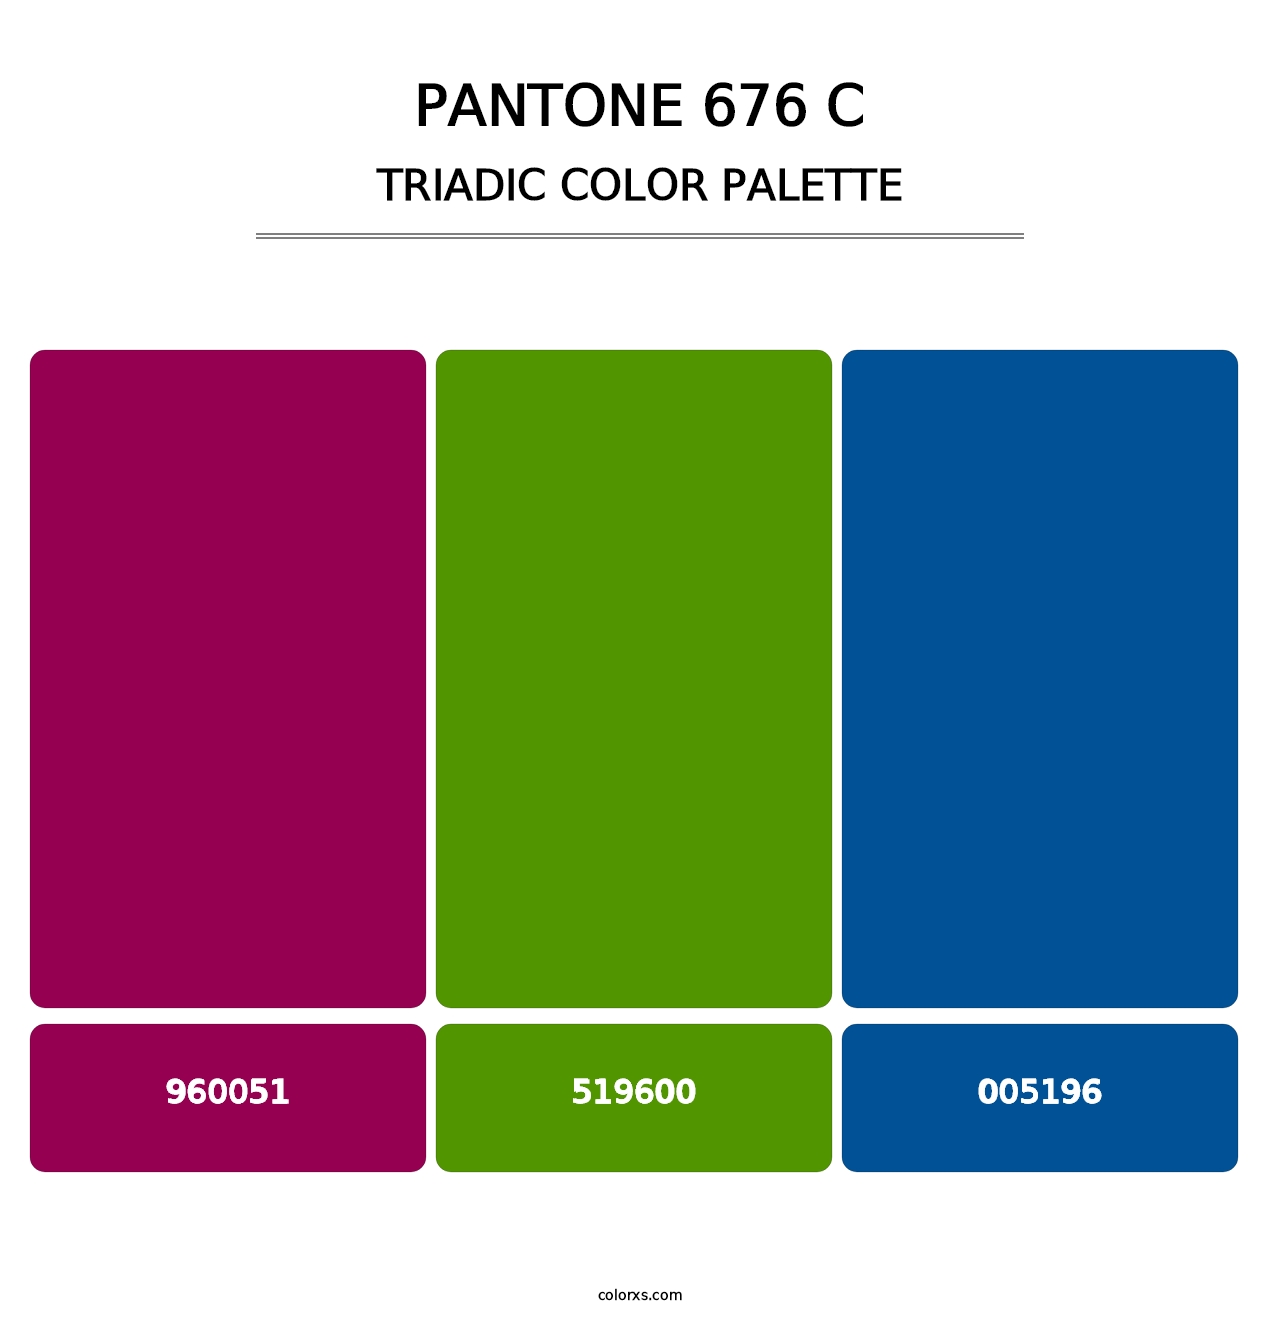 PANTONE 676 C - Triadic Color Palette